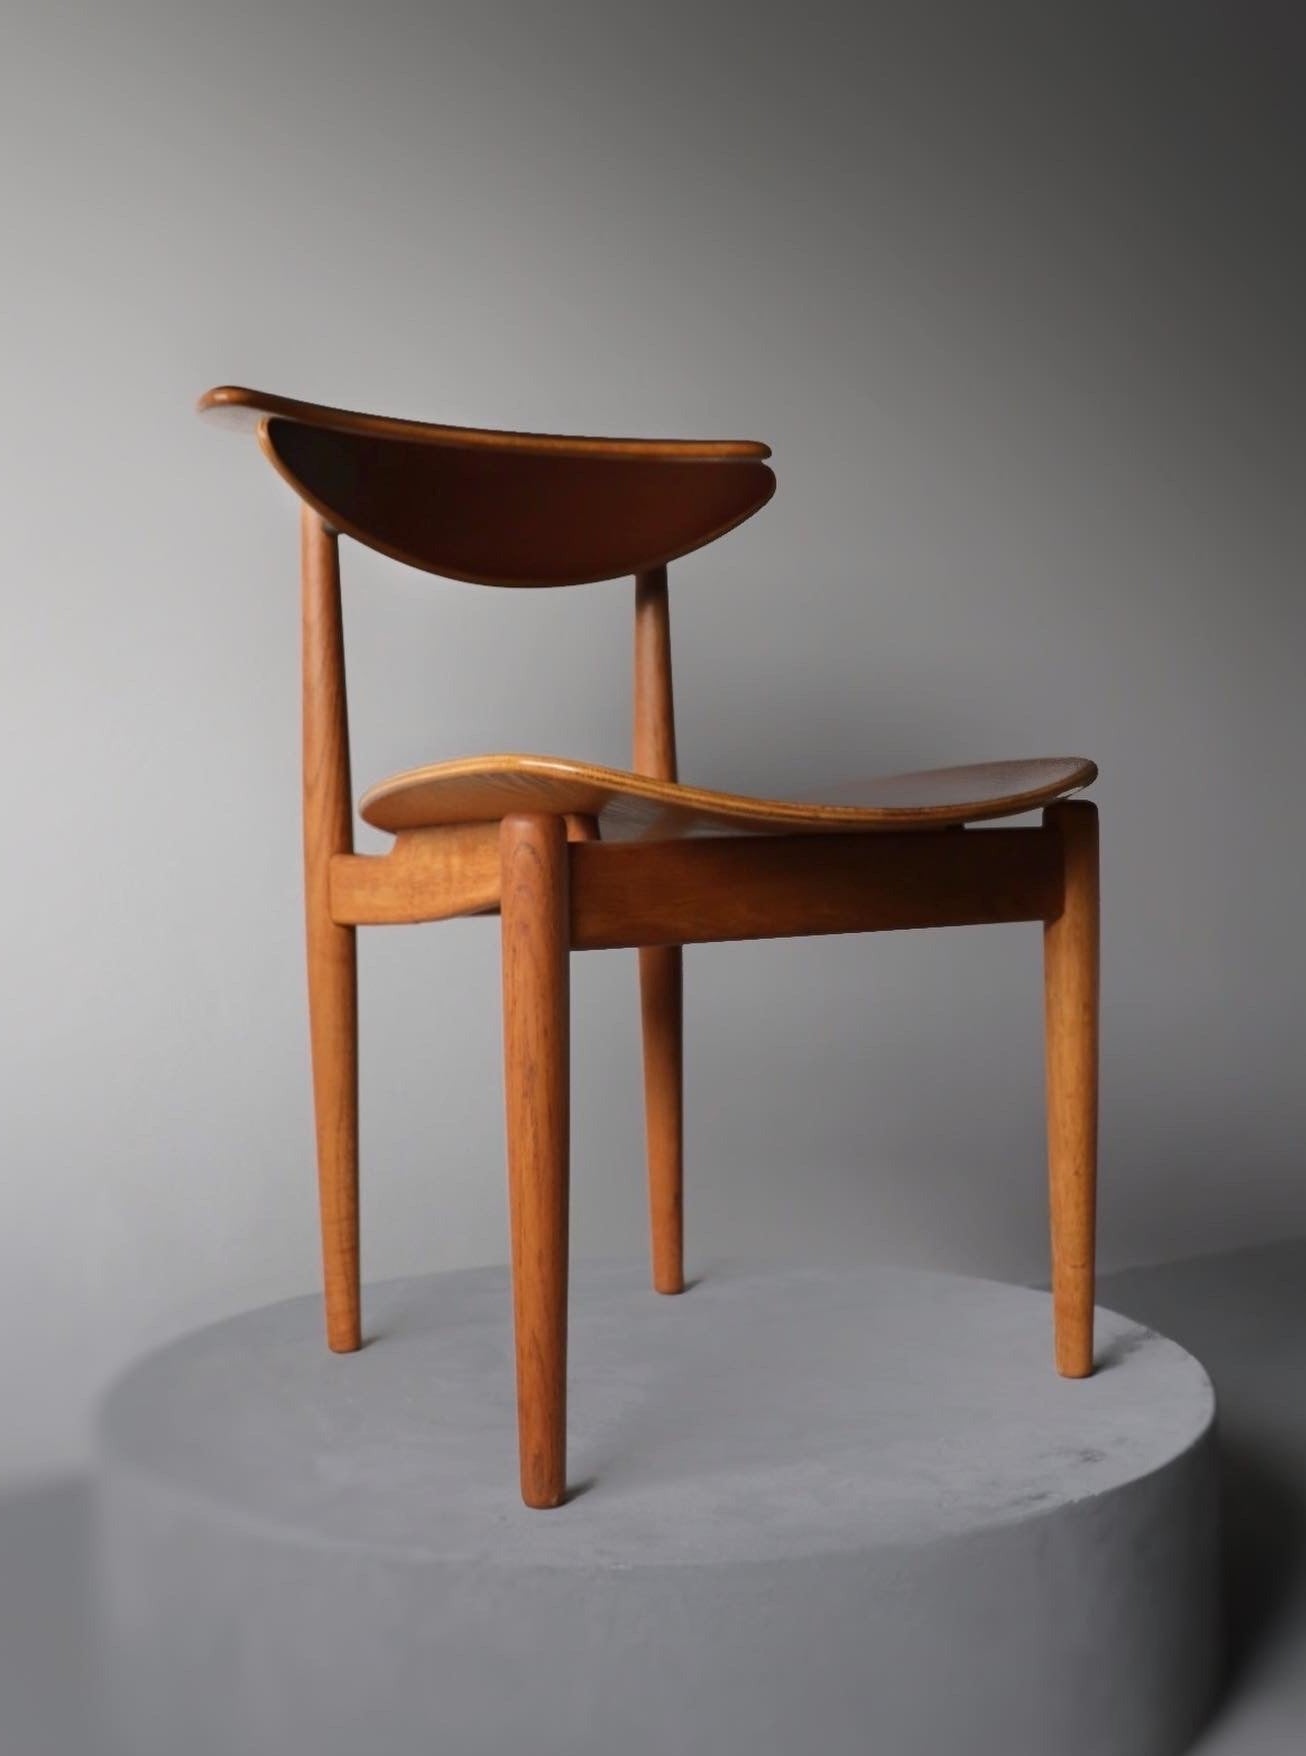 Reading chair model BO62 by Finn Juhl for Bovirke